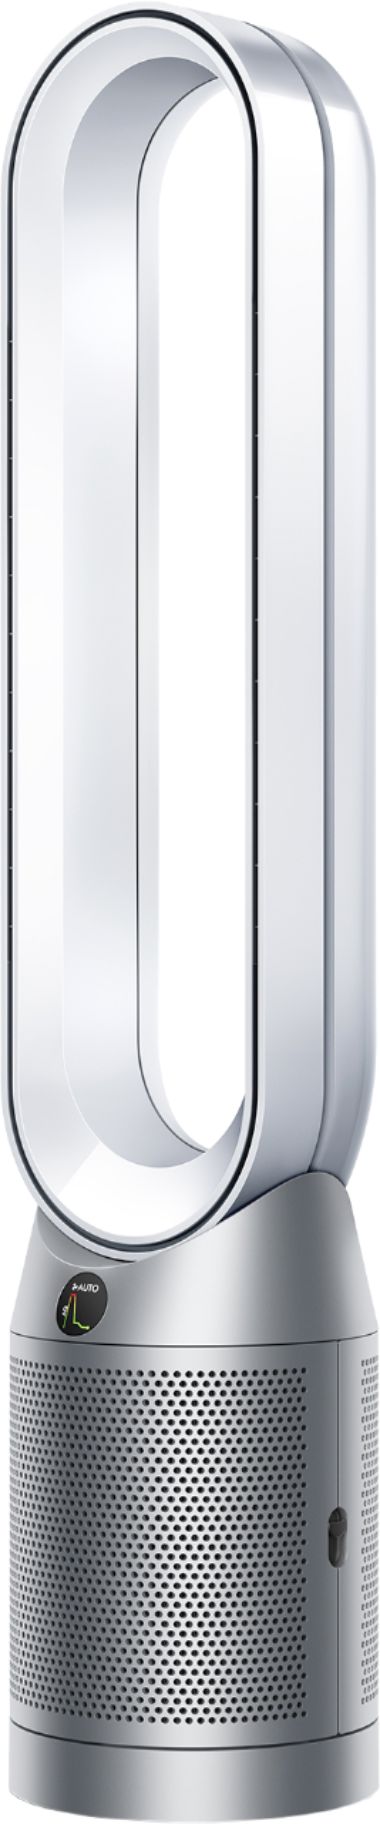 冷暖房/空調 空気清浄器 Dyson Purifier Cool TP07 Smart Air Purifier and Fan White/Silver 